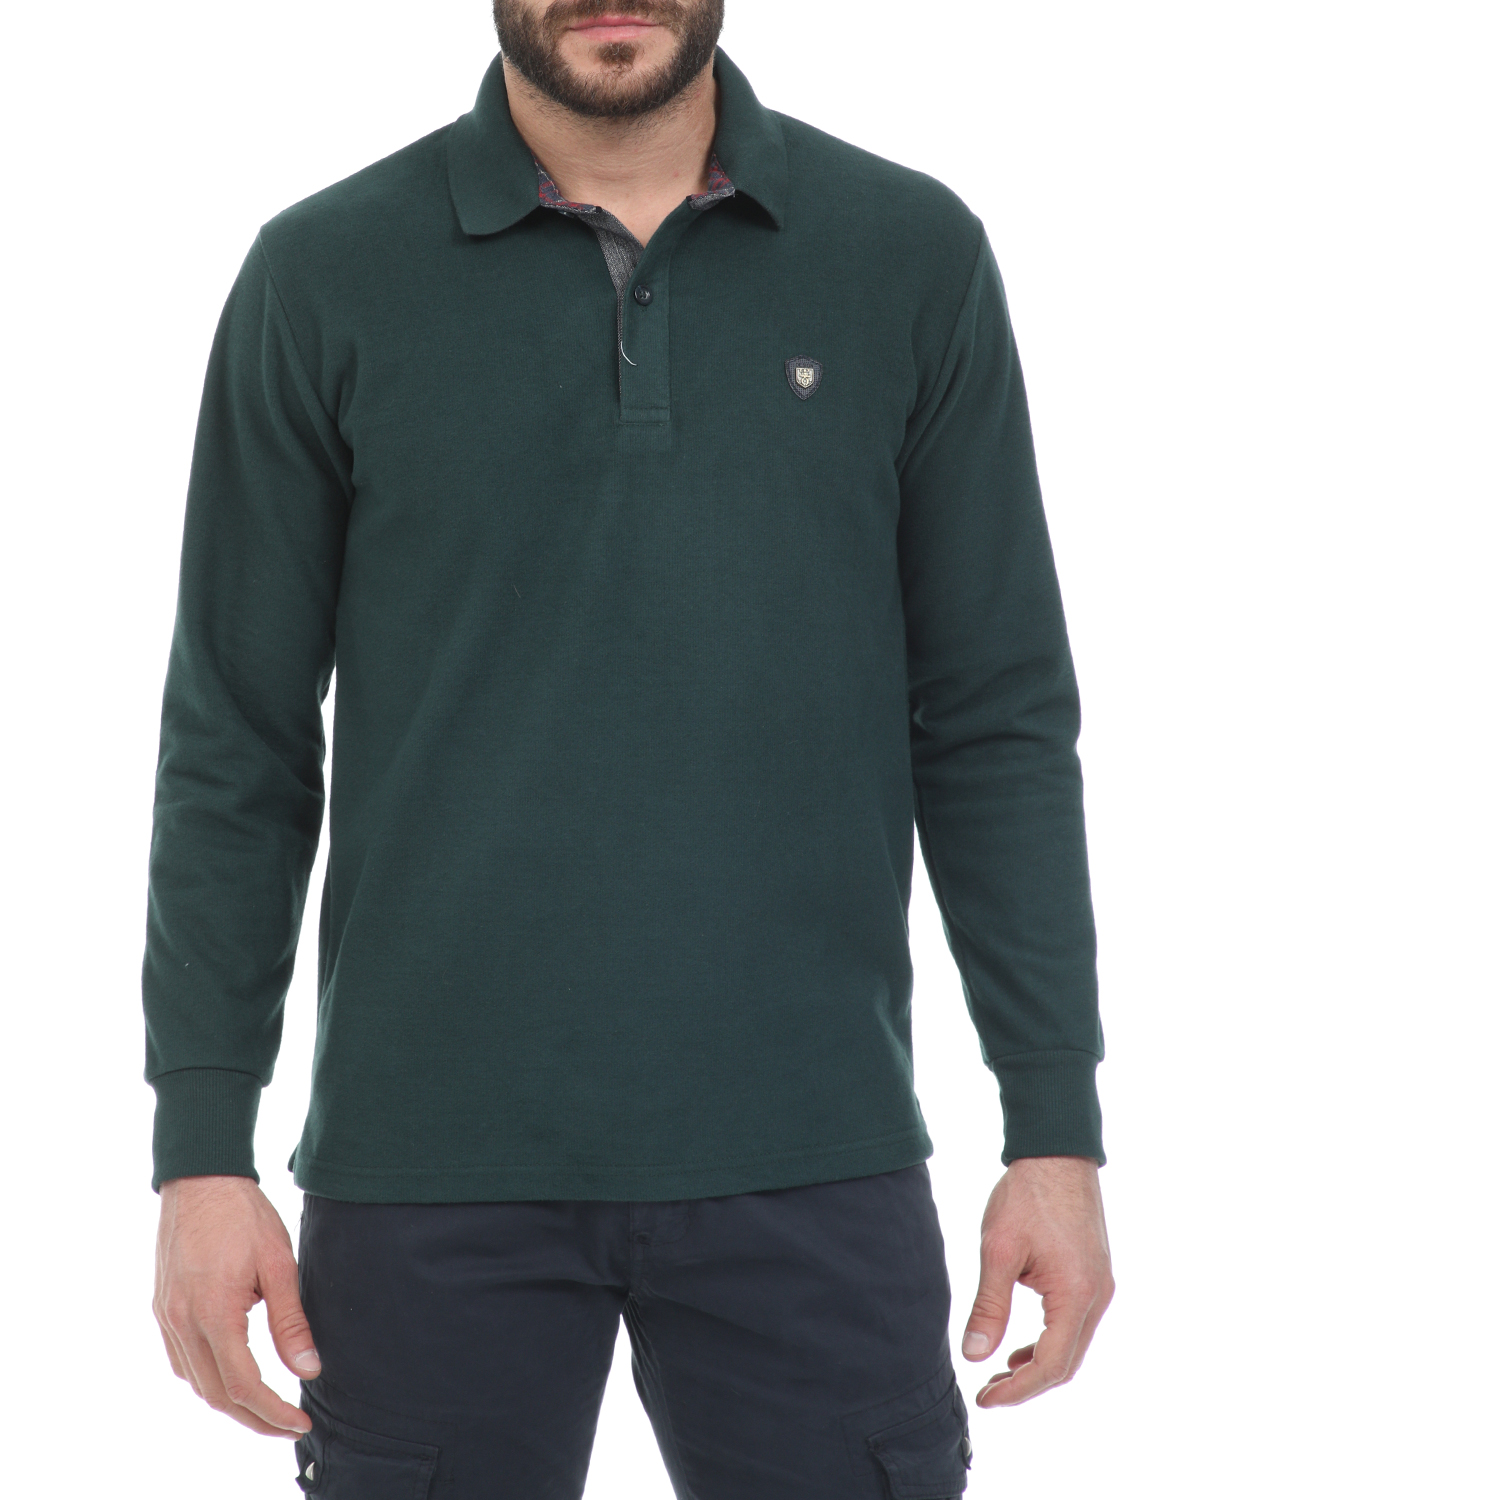 Ανδρικά/Ρούχα/Μπλούζες/Πόλο CATAMARAN SAILWEAR - Ανδρική polo μπλούζα CATAMARAN SAILWEAR πράσινη